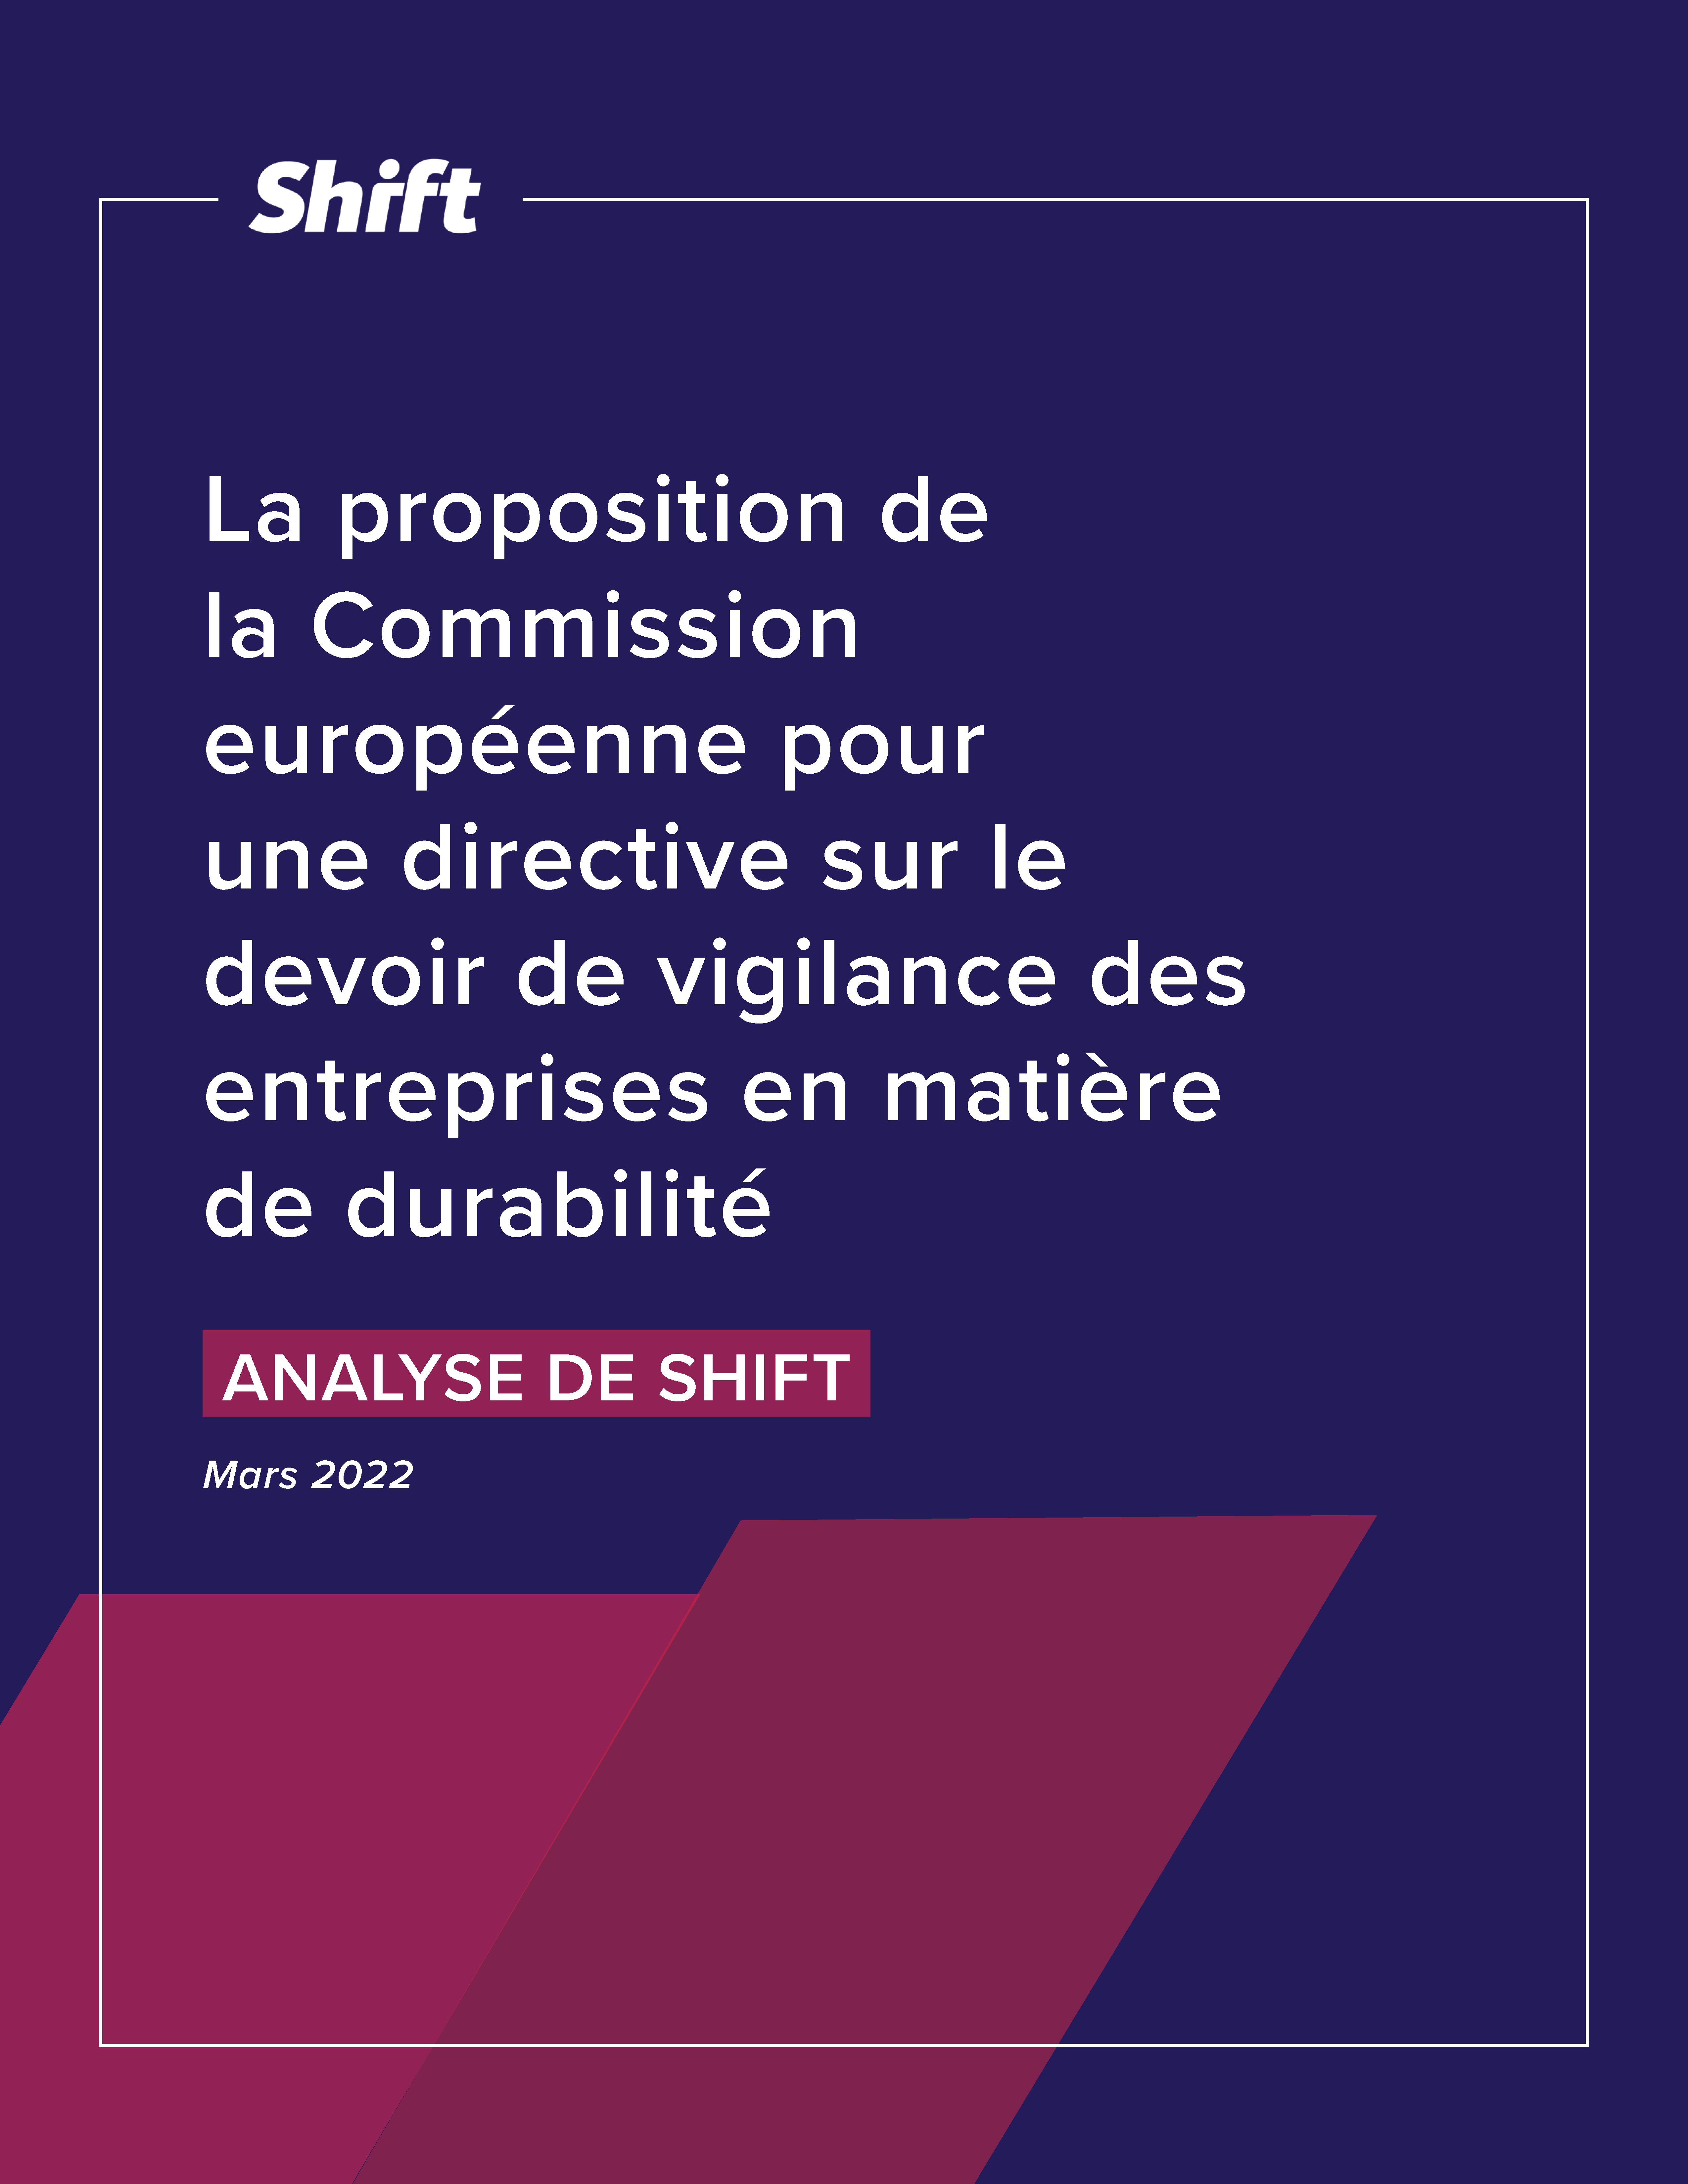 La proposition de la Commission européenne pour une directive sur le devoir de vigilance des entreprises en matière de durabilité, Analyse de Shift